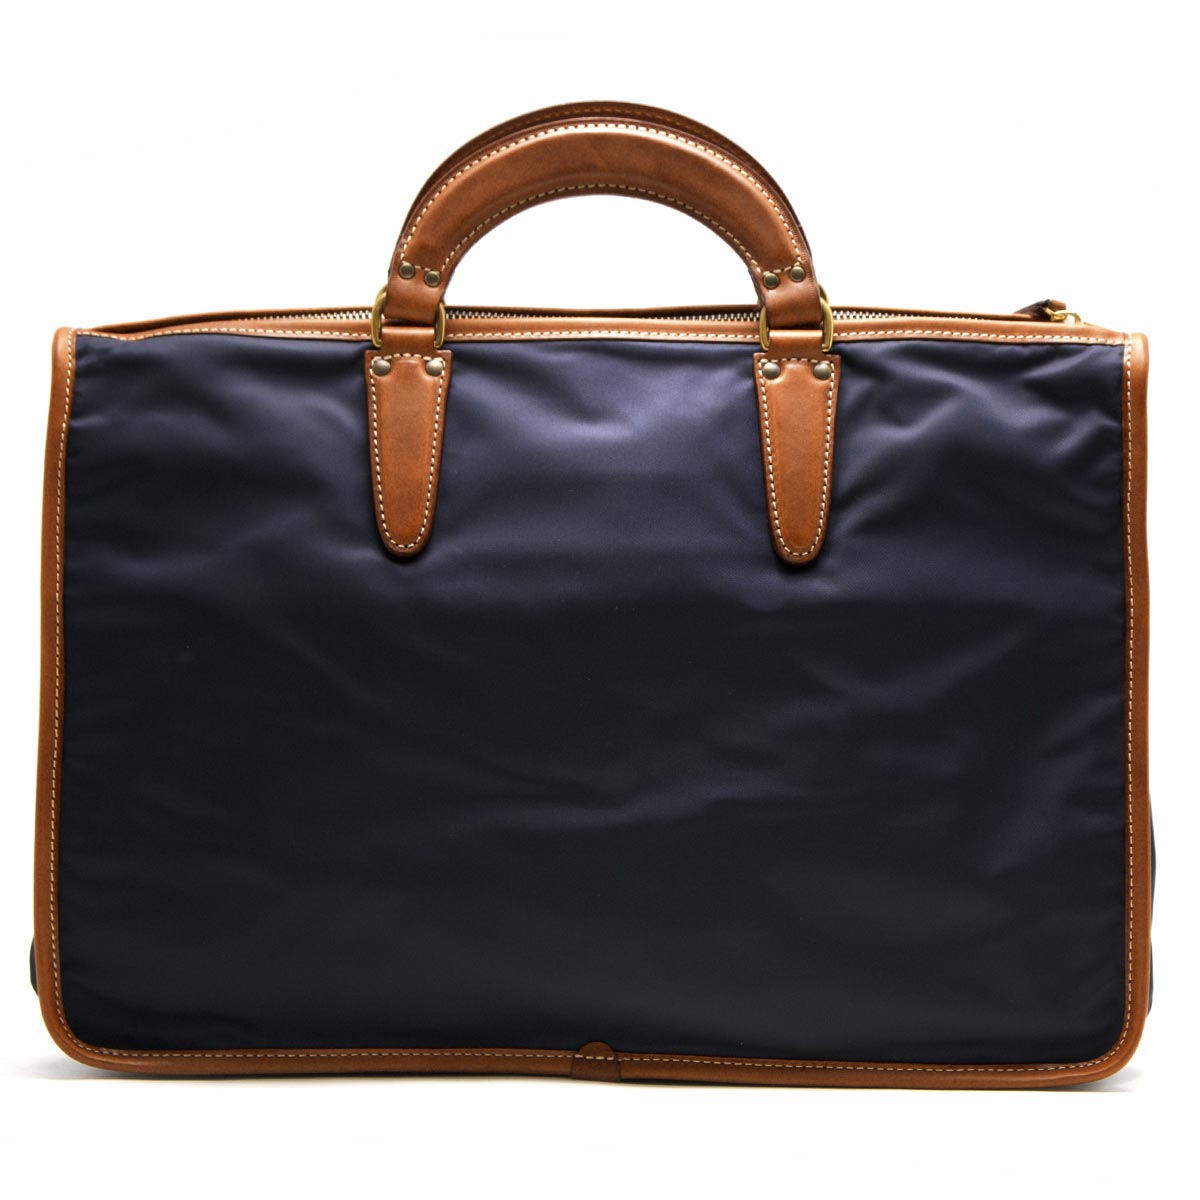 フェリージ Felisi バッグ 9841 ビジネスバッグ ブリーフケース カーフレザー 本革 カバン 鞄 メンズ イタリア製 ブラウン